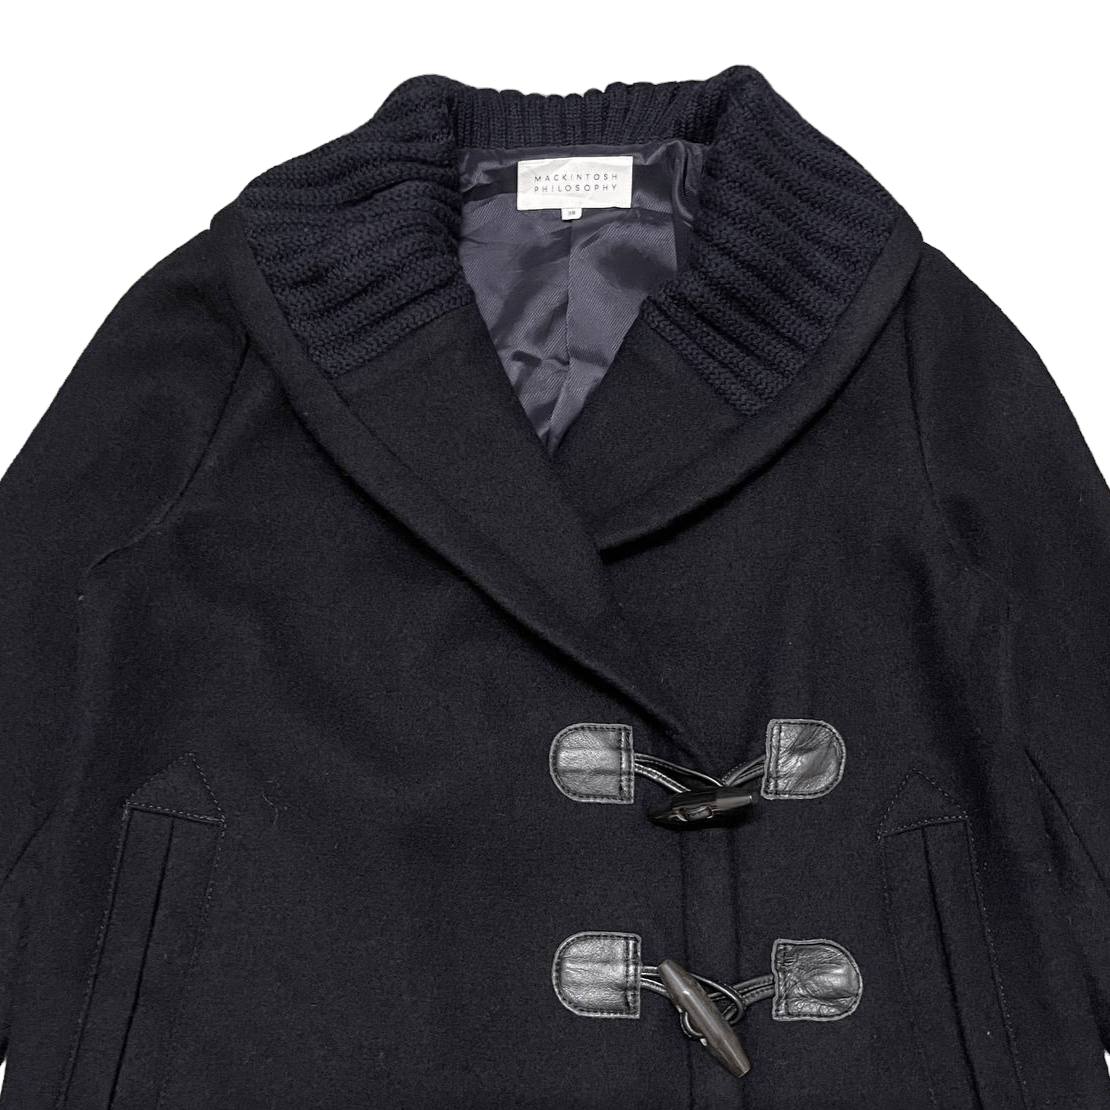 Mackintosh Philosophy Wool Coat - 2